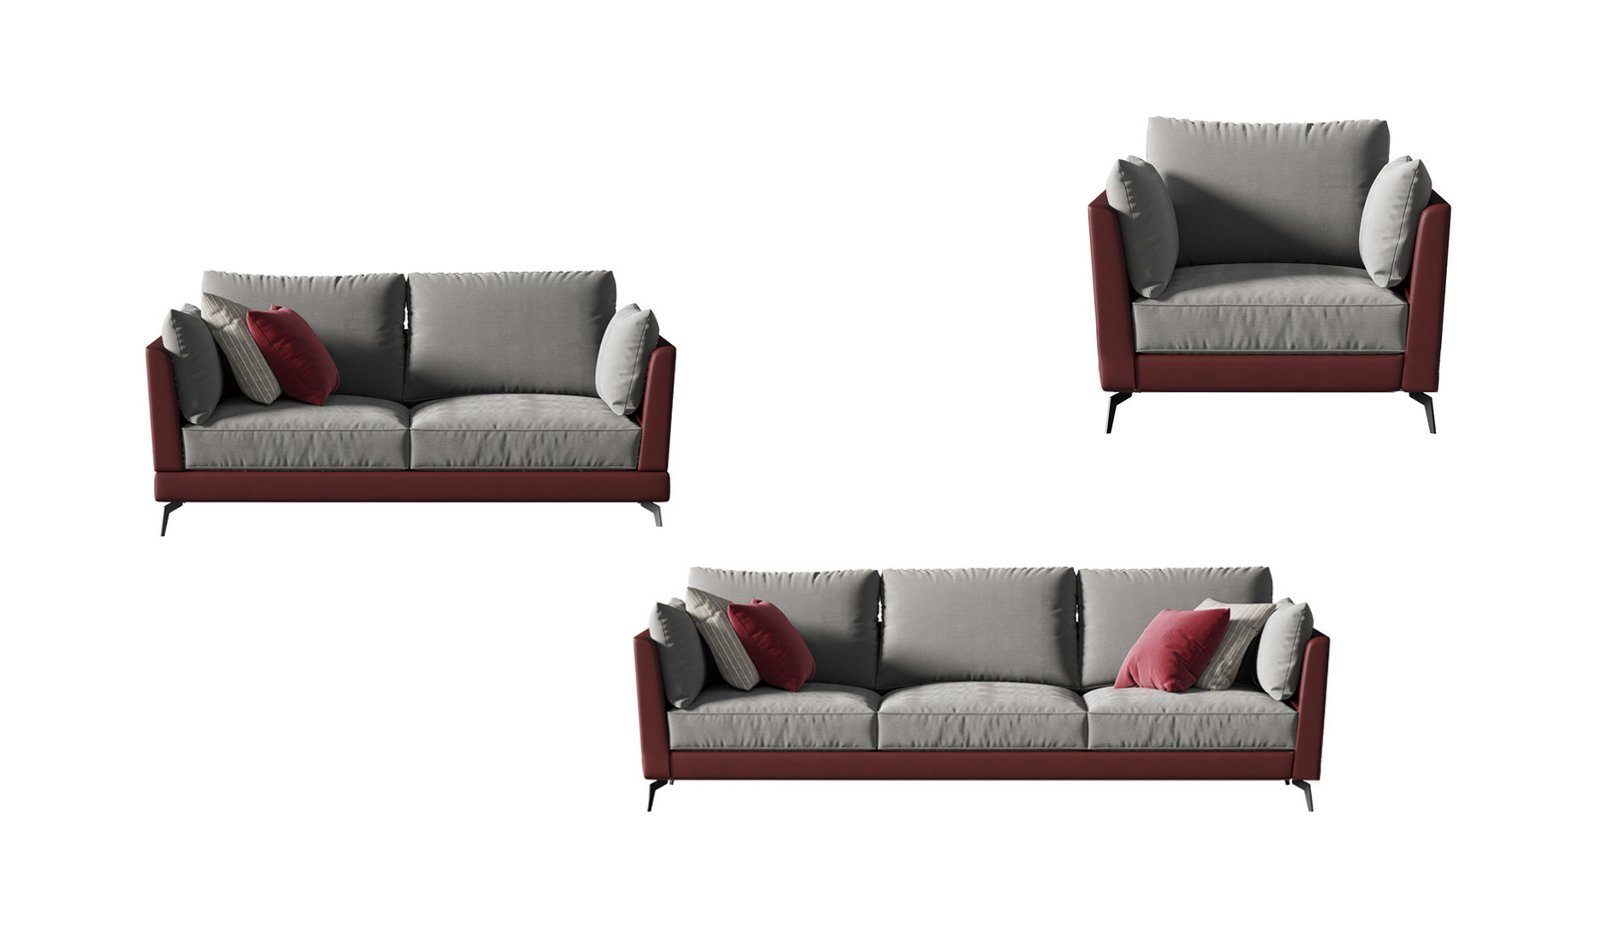 JVmoebel Sofa Sofagarnitur 3+2+1 in Sofas, Sitzer Textil Stoff Wohnlandschaft Europe Made